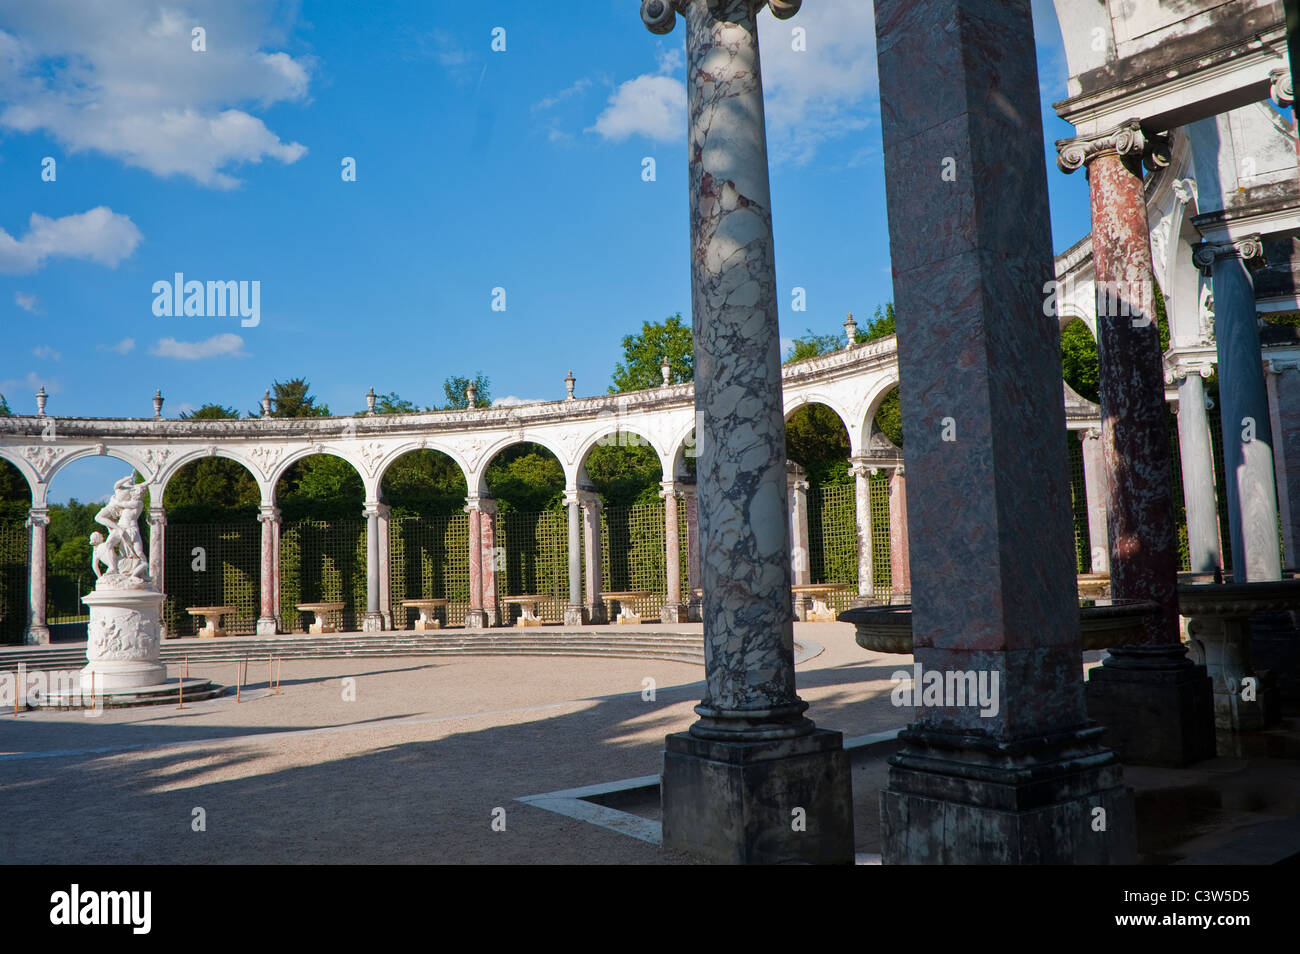 Versailles, France, scènes de parc urbain, 'Bousquet de la Colonnade' dans le jardin, 'Château de Versailles' Châteaux français, architecture, extérieur Banque D'Images